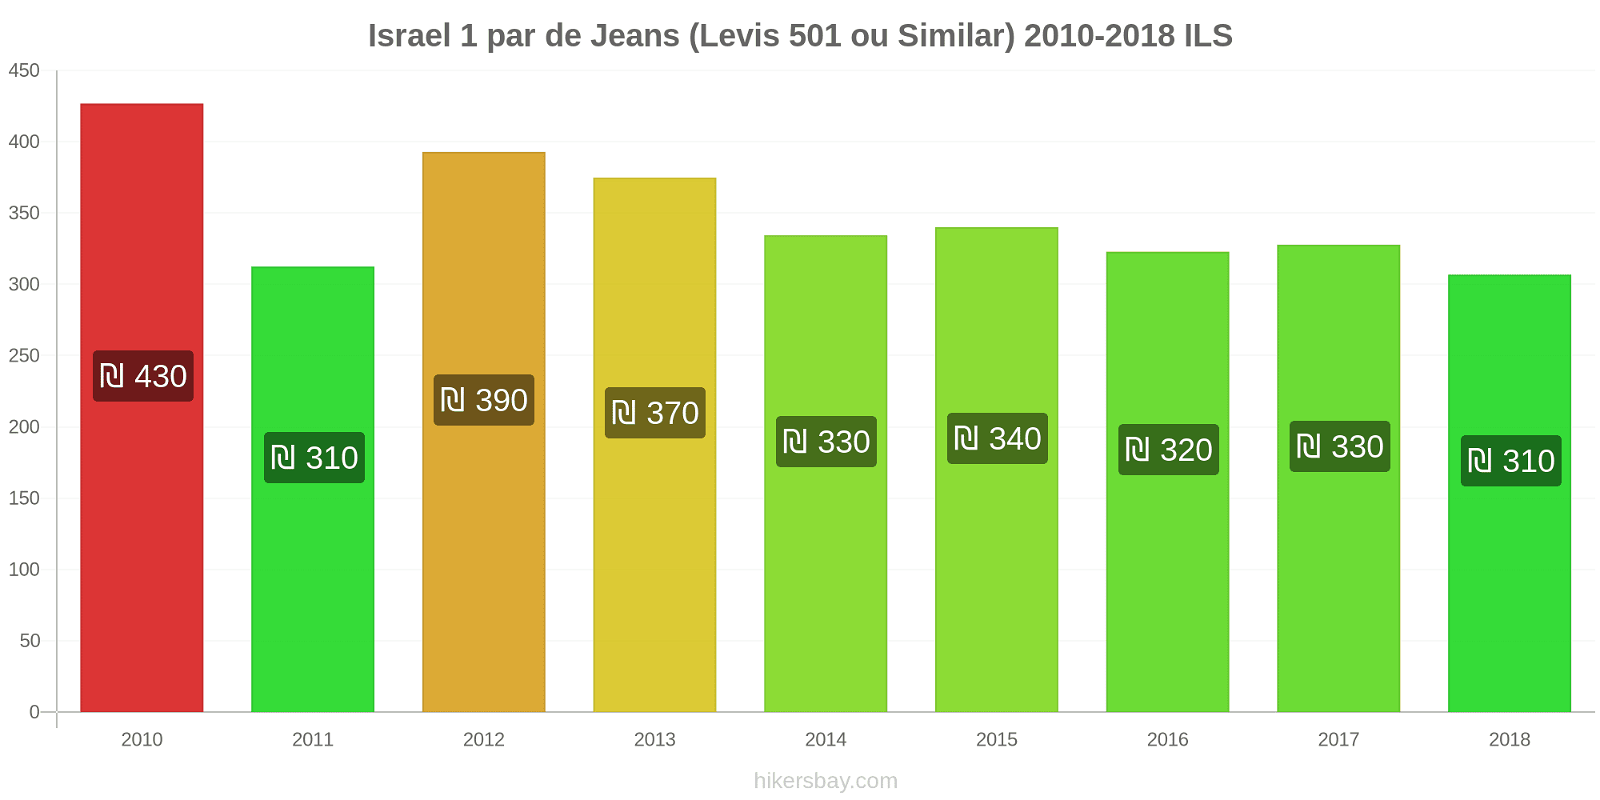 Israel mudanças de preços 1 par de jeans (Levis 501 ou similares) hikersbay.com